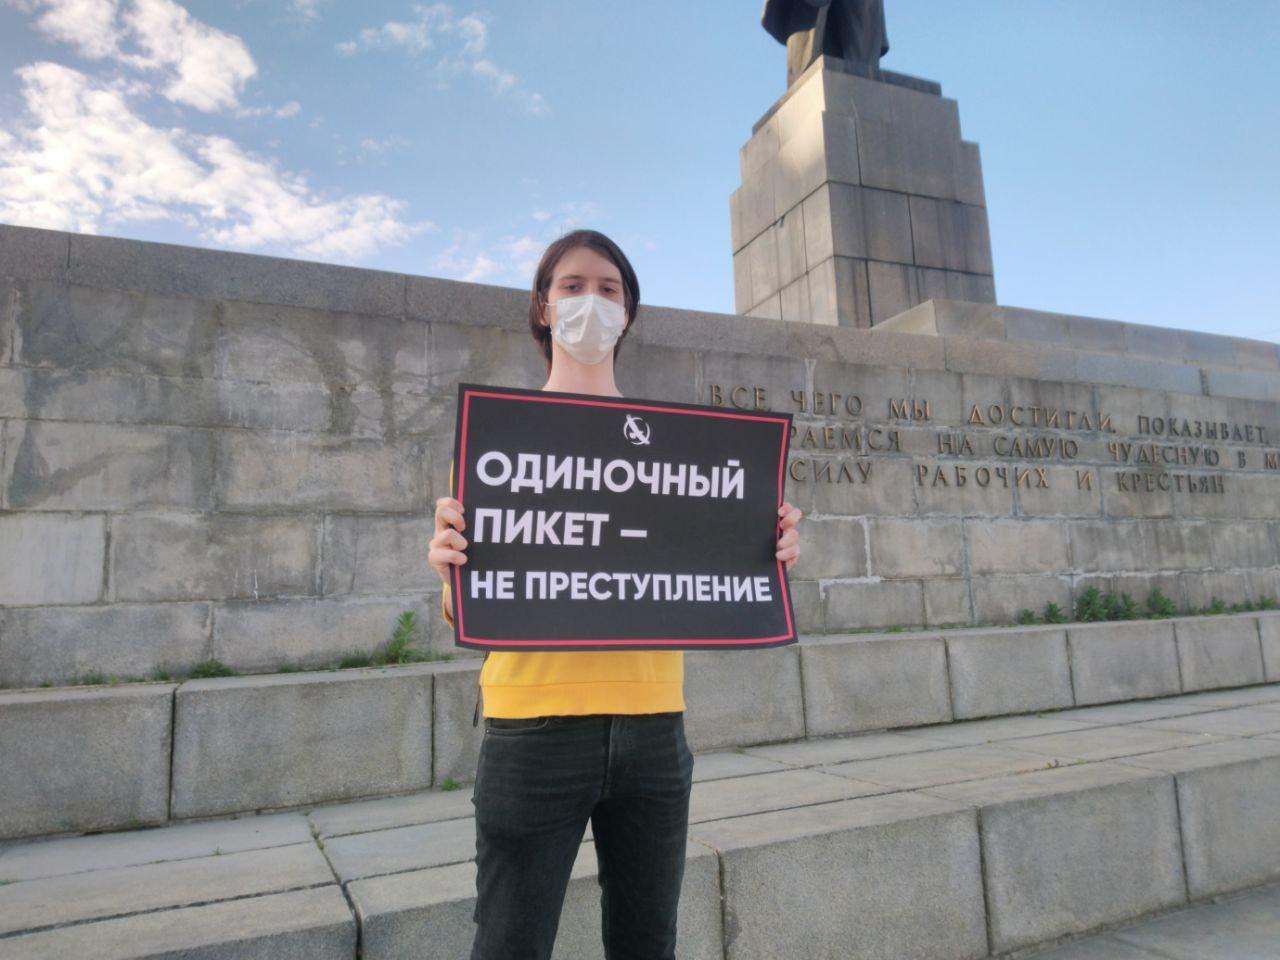 Либертарианец с плакатом "Одиночный пикет — не преступление"